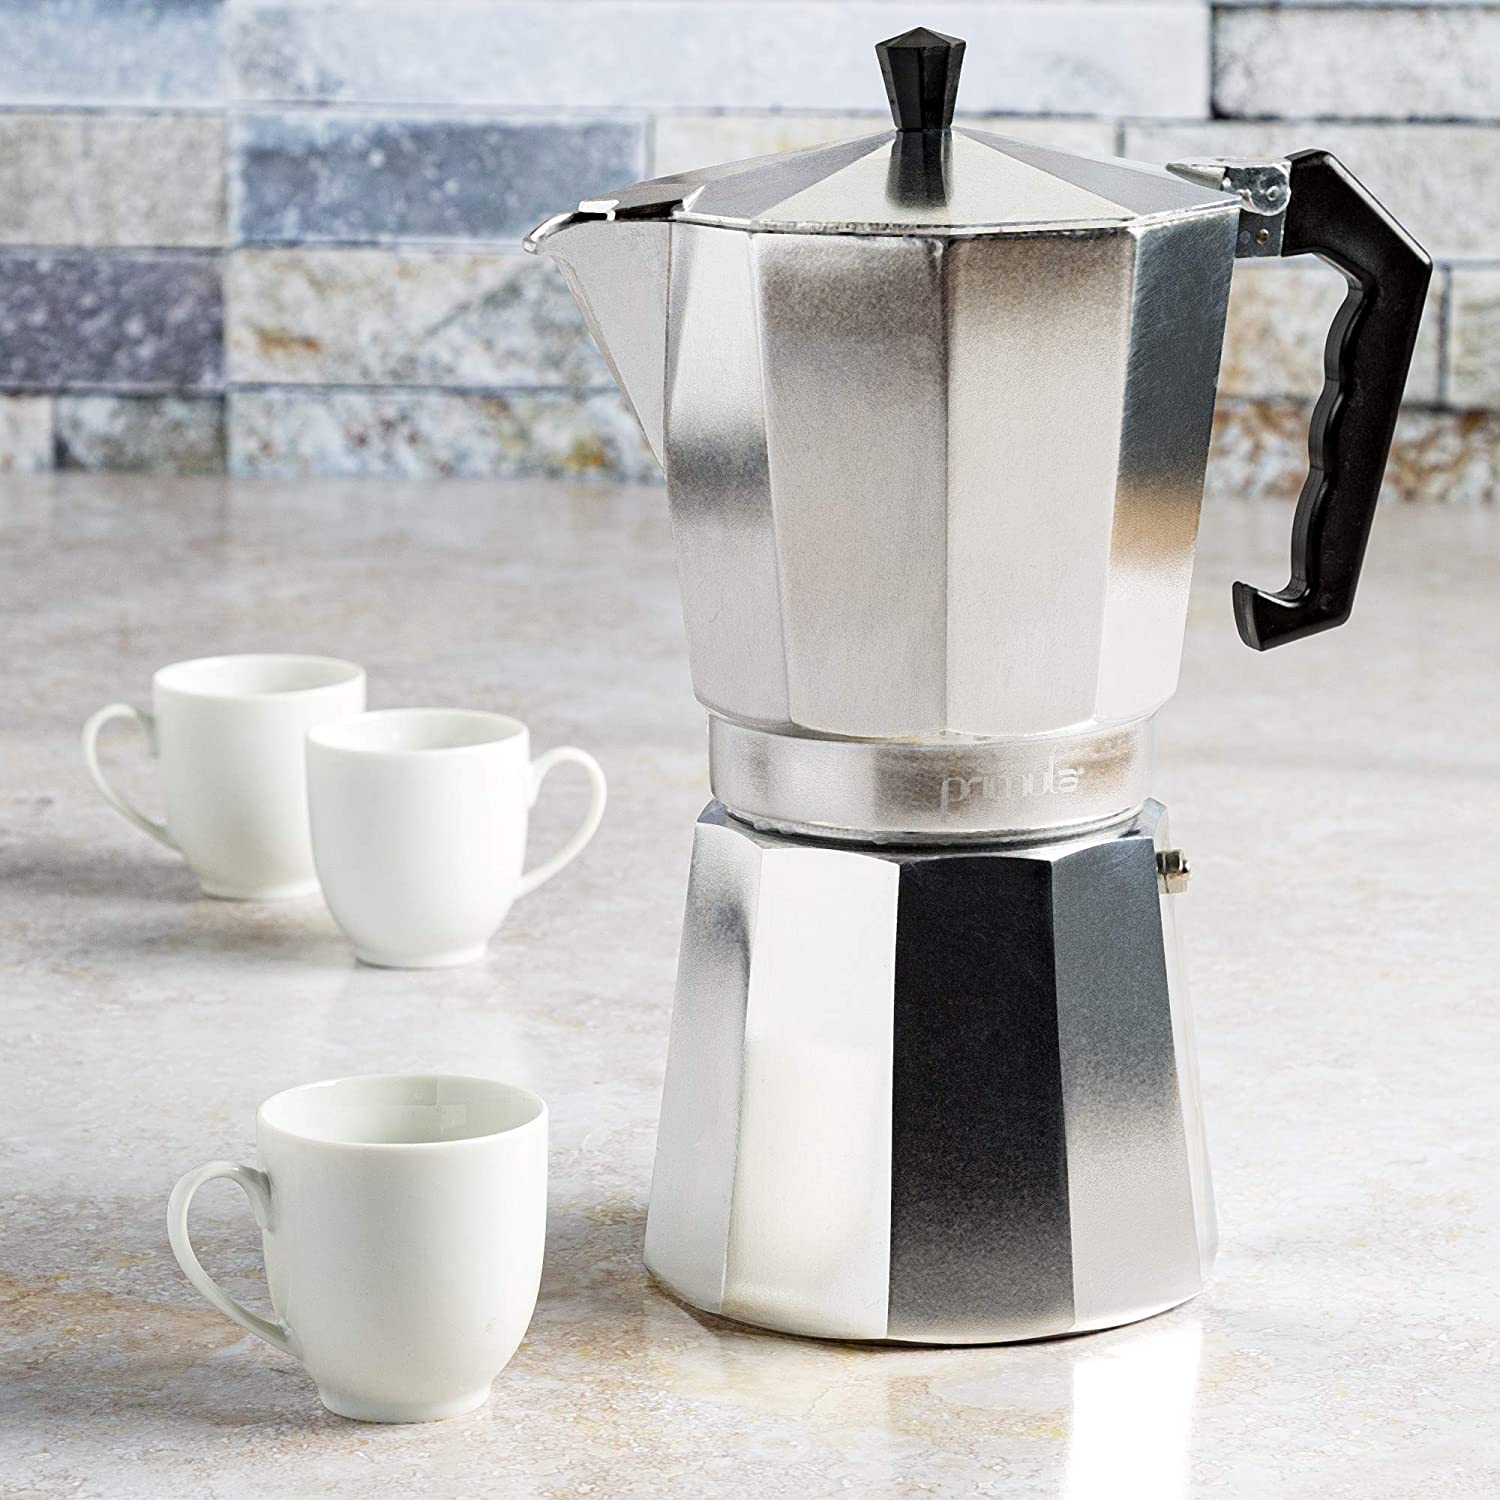 Fino Stovetop Espresso Coffee Maker 6 Cup